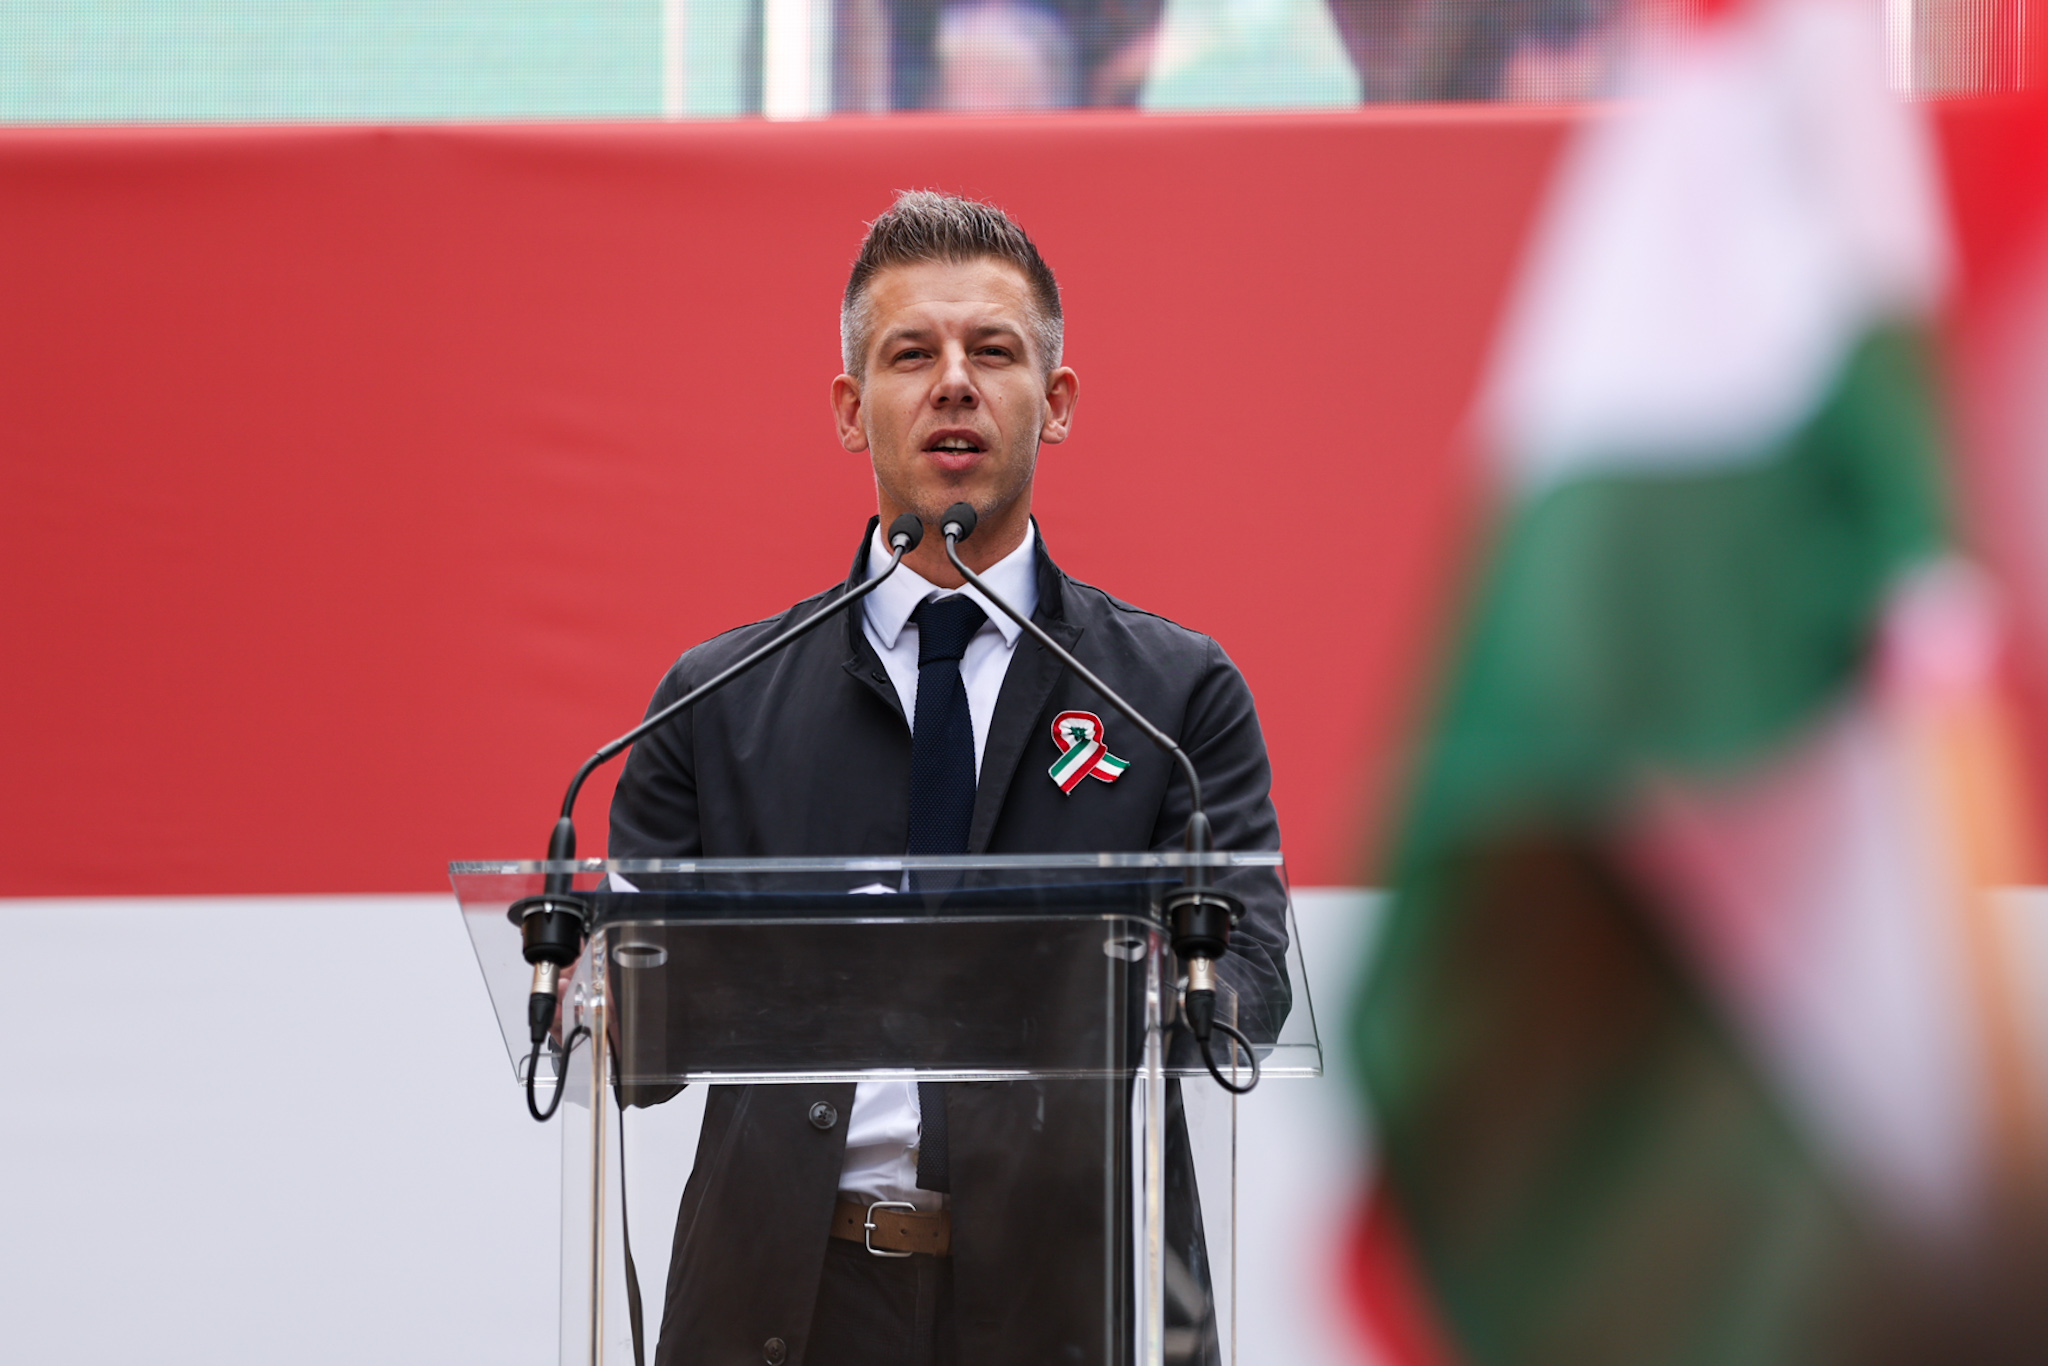 Magyar Péter néhai nagyapját védi: Ellentétben a Fidesz politikusainak egy részével ügynök sem volt